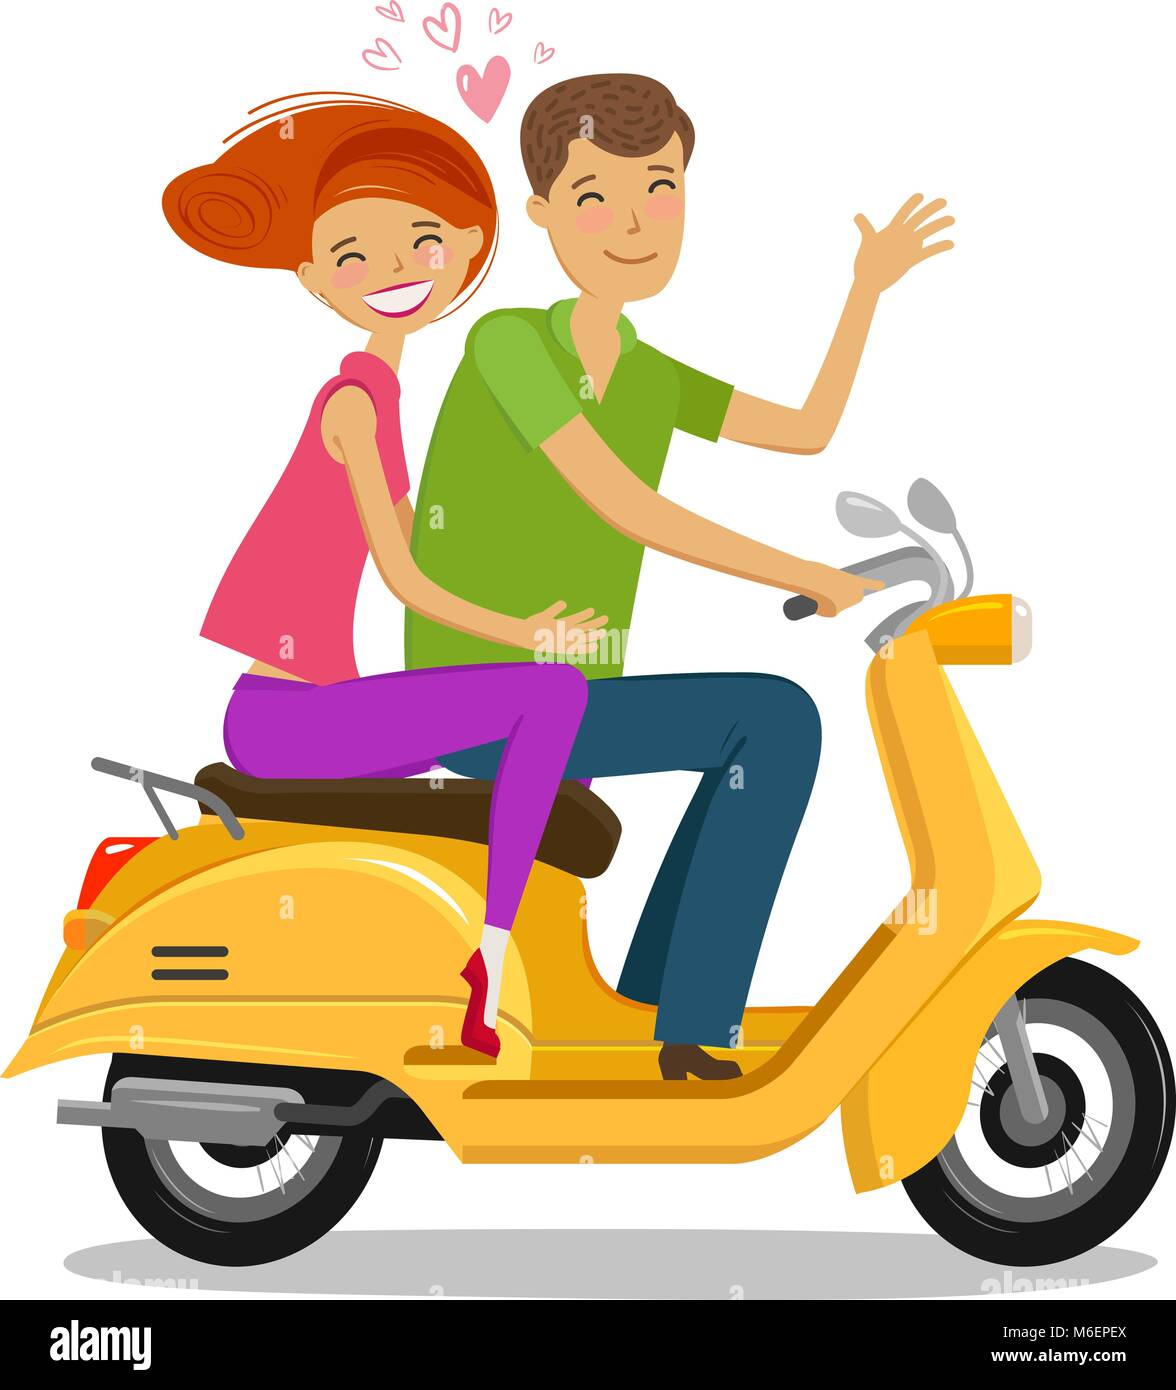 Glückliches Paar, Moped oder Roller. Reisen, Reise Konzept. Cartoon Vector Illustration Stock Vektor